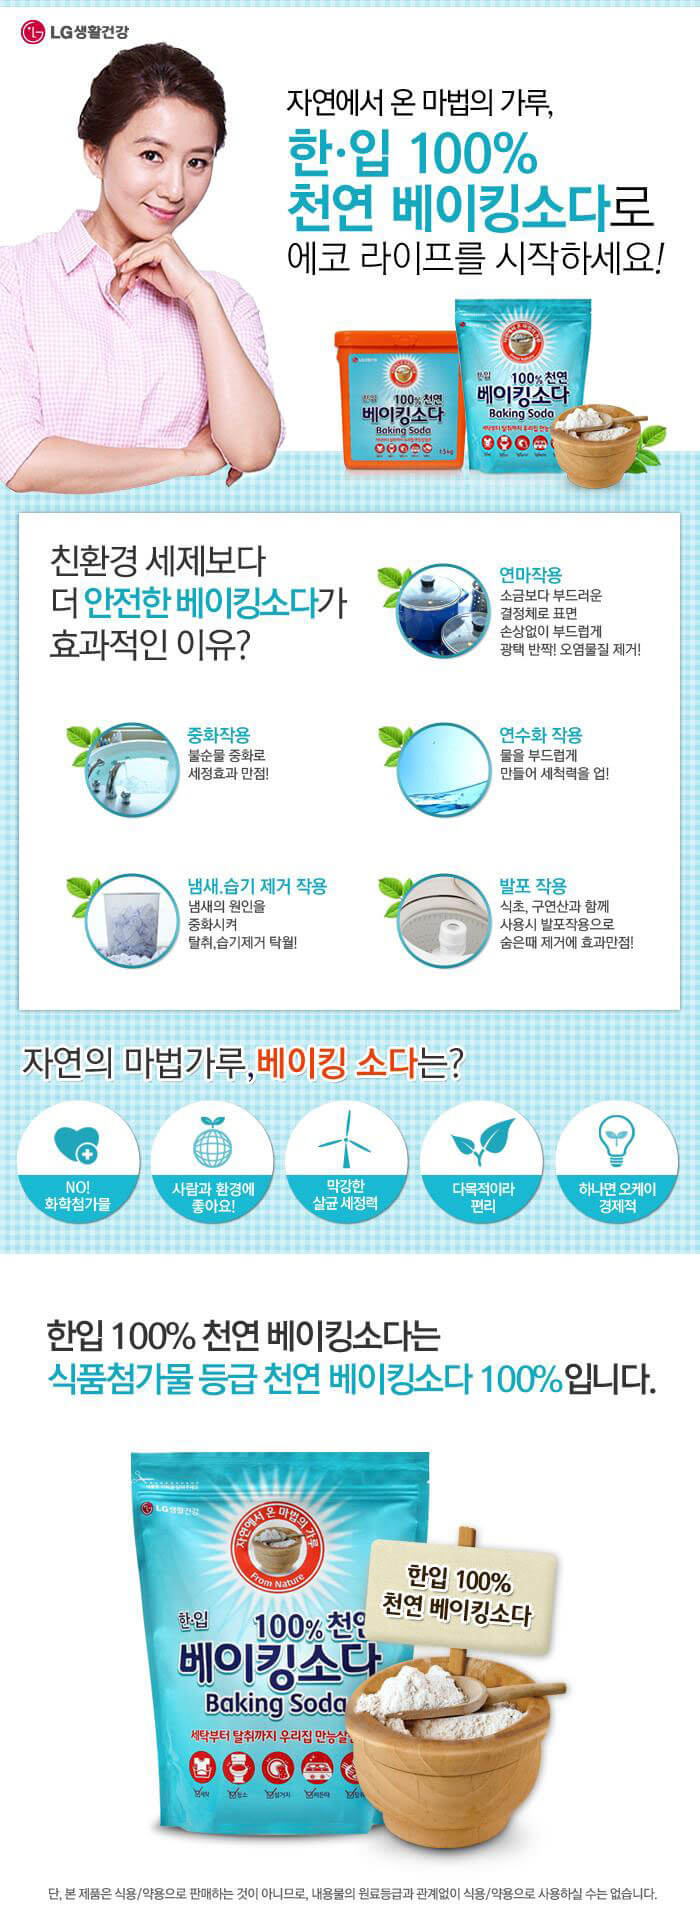 韓國食品-[LG생활건강] 한입 베이킹소다 리필 2kg